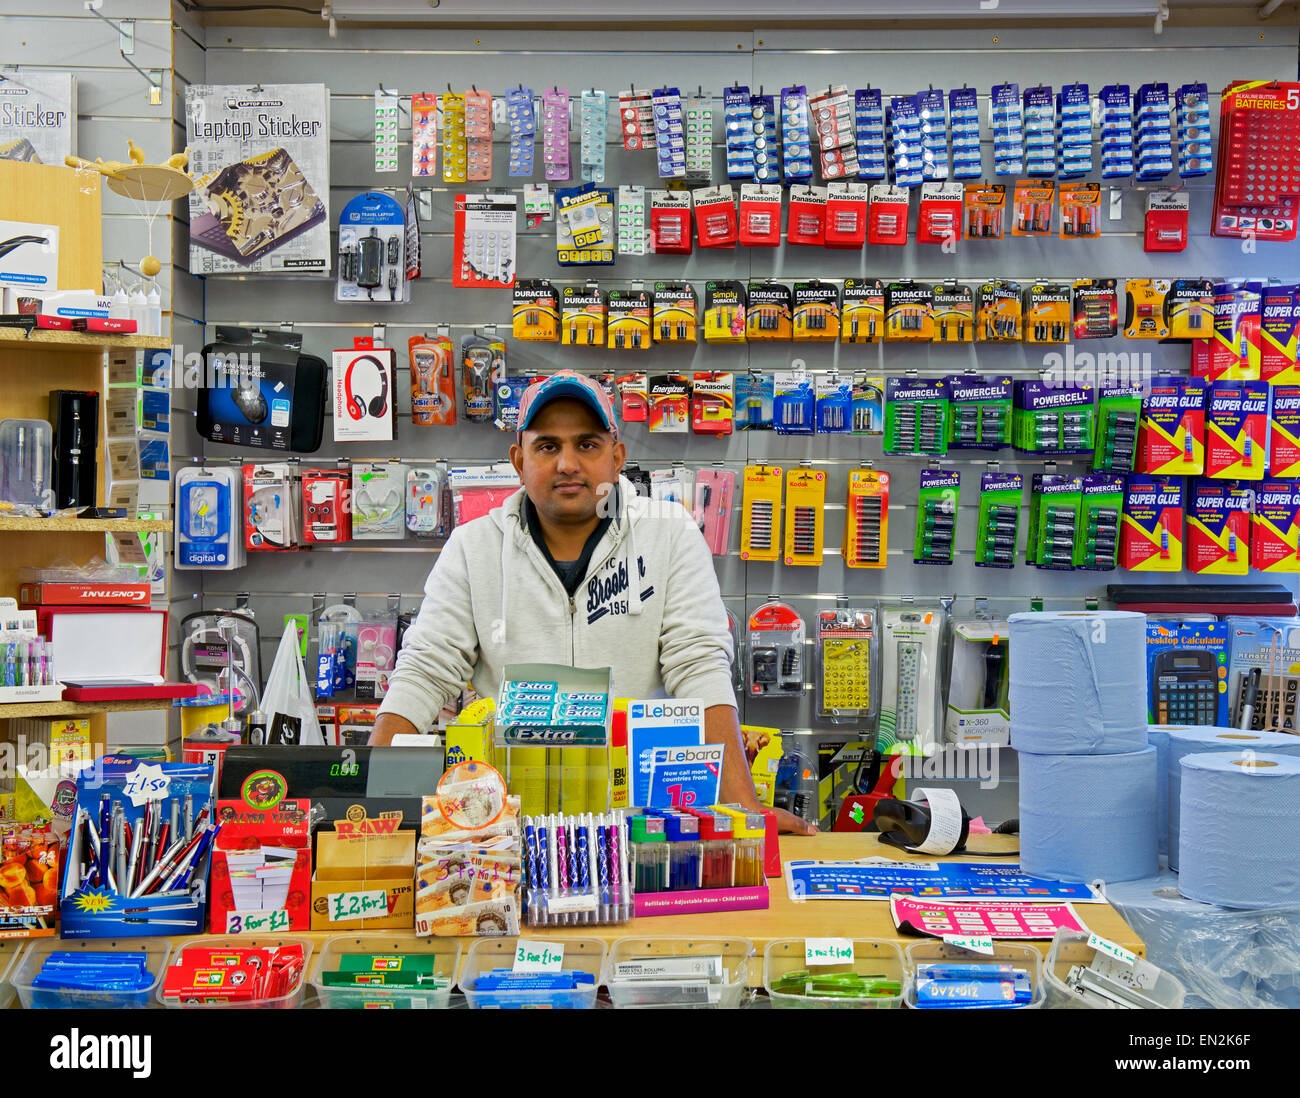 Derrière l'homme à l'encontre de pound shop dans la région de Wakefield, West Yorkshire, England UK Banque D'Images